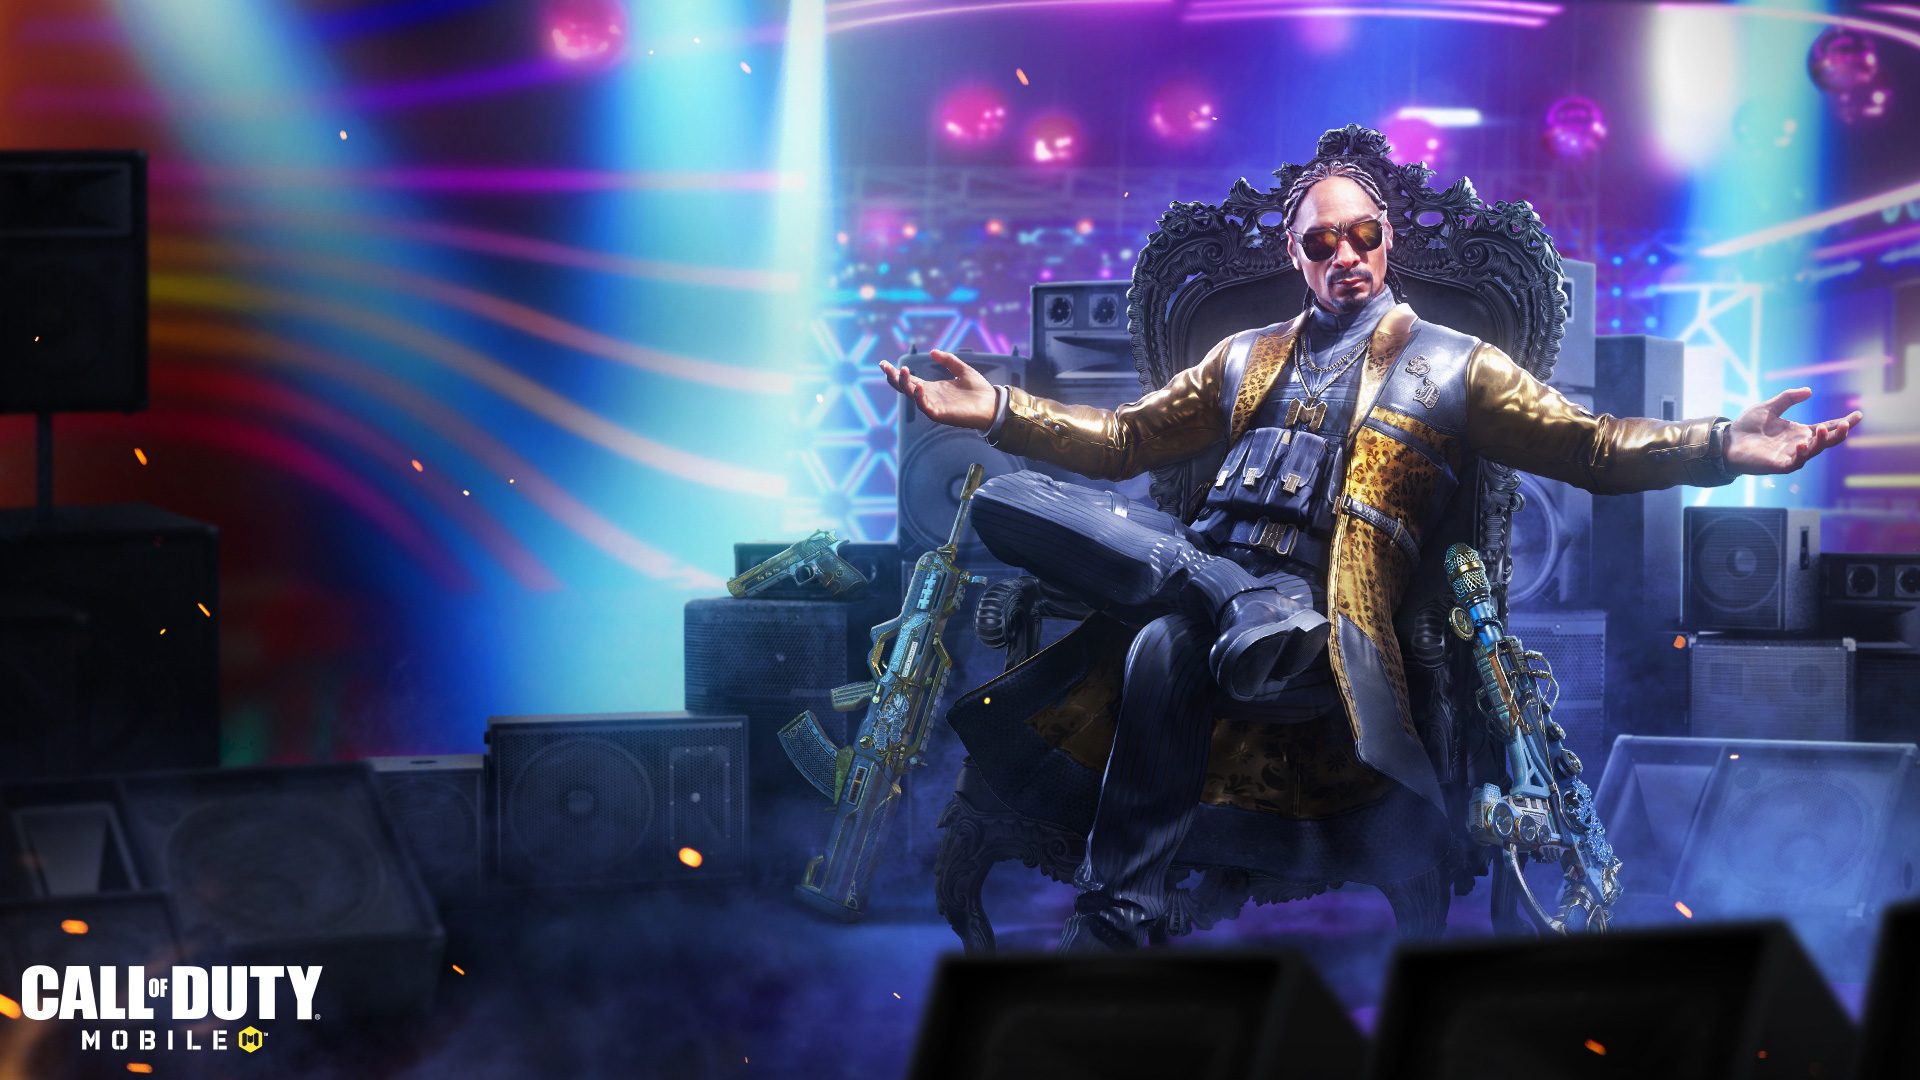 Image promotionnelle de l'addition de Snoop Dogg dans Call of Duty. Il est assis les bras ouverts dans un grand siège.